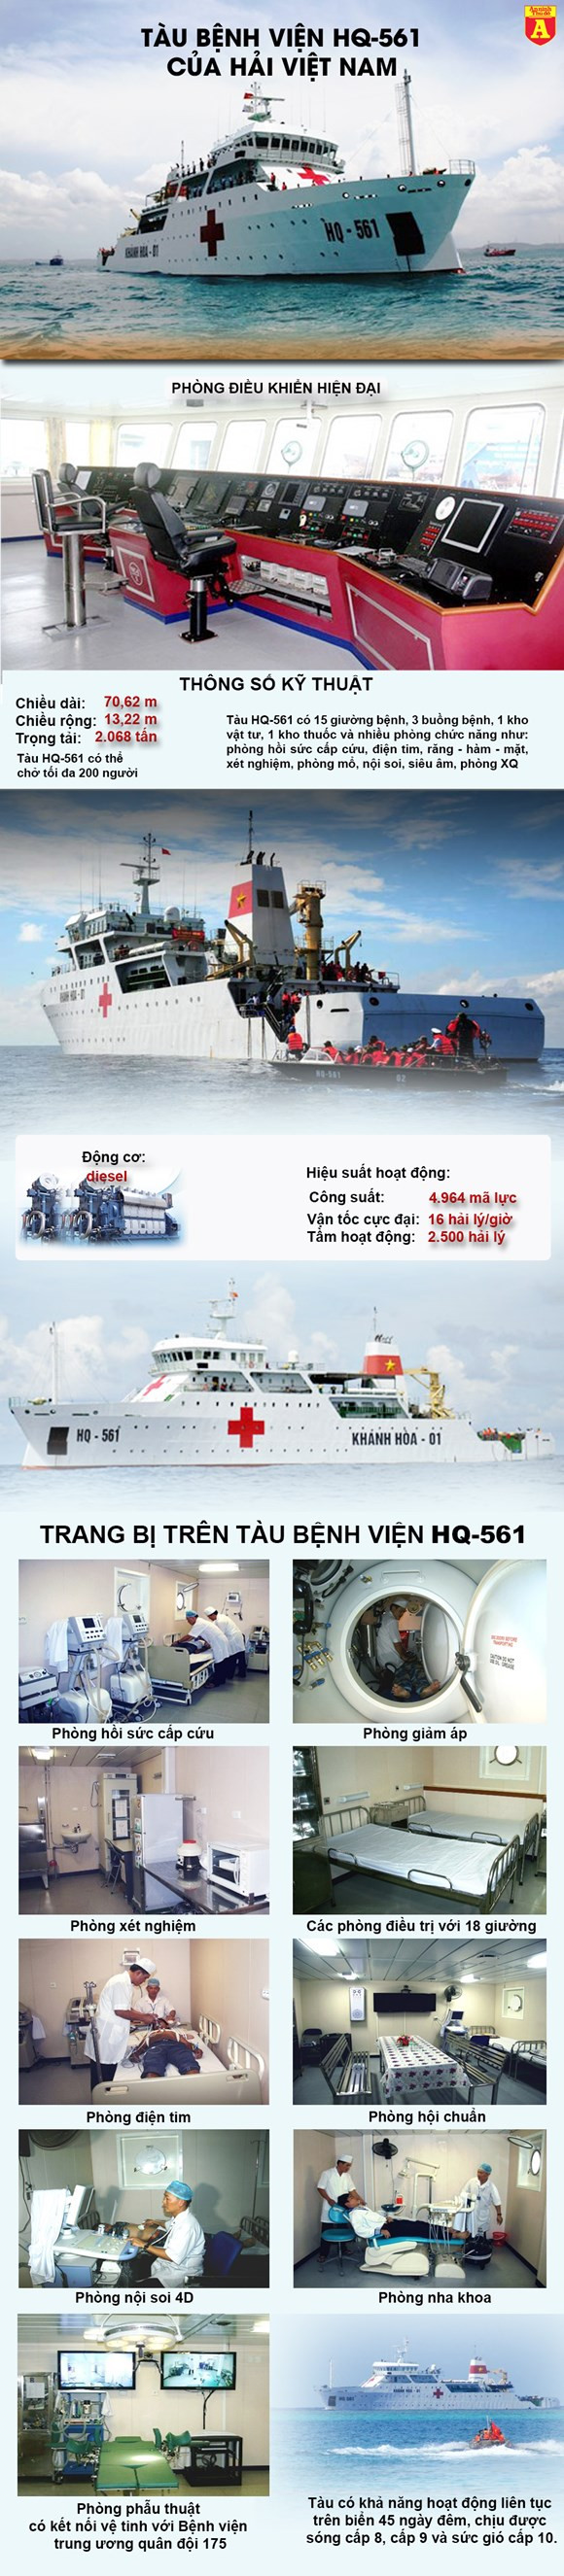 tàu bệnh viện, tàu Khánh Hòa 01, HQ561, hải quân Việt Nam